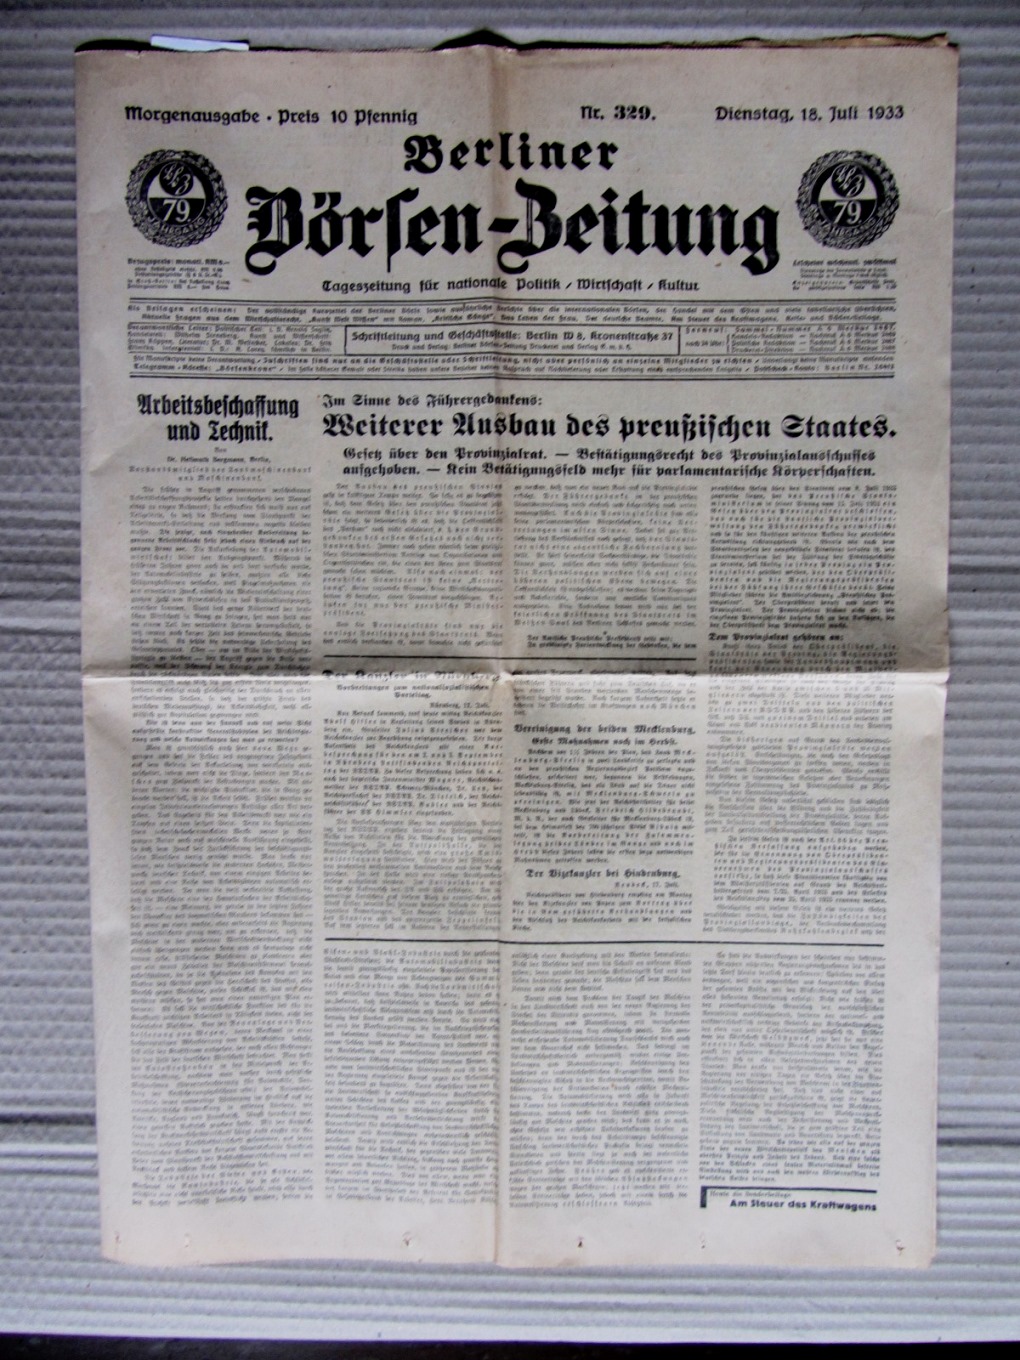   Berliner Börsen-Zeitung. Morgenausgabe. Nr.329 vom 18.Juli. 